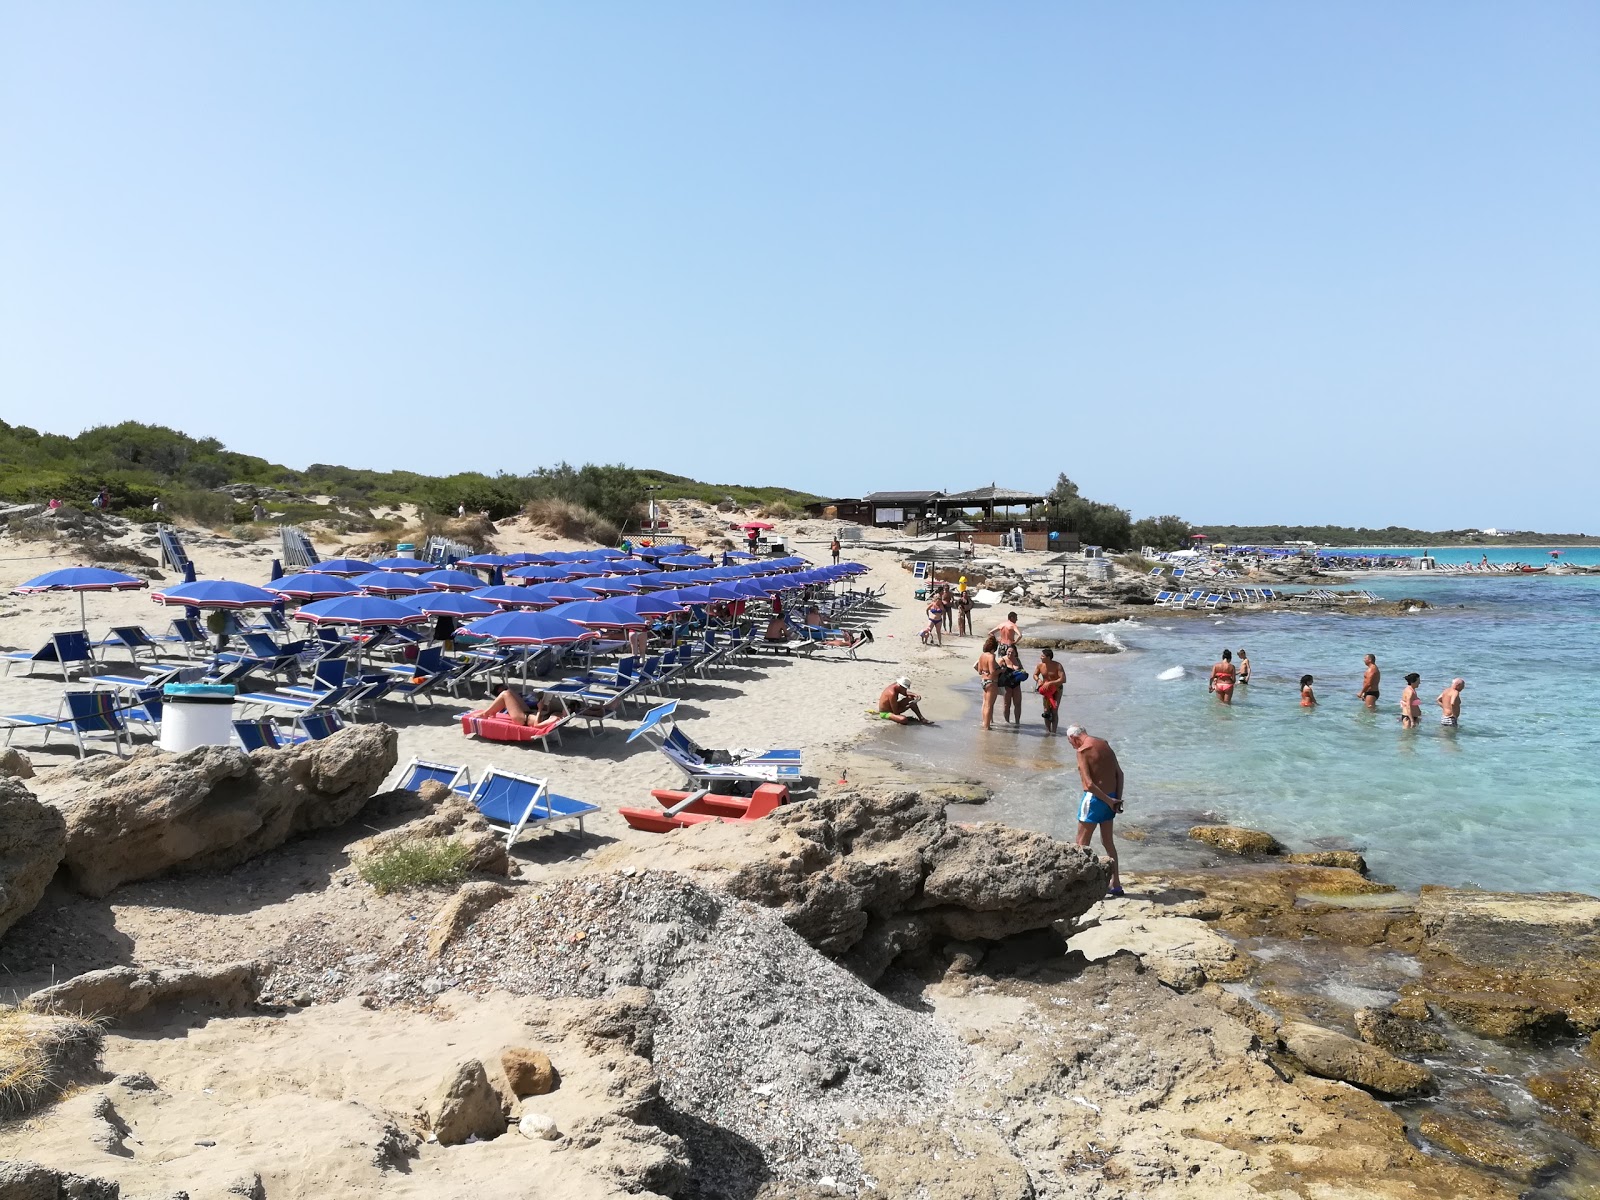 Punta della Suina'in fotoğrafı geniş plaj ile birlikte